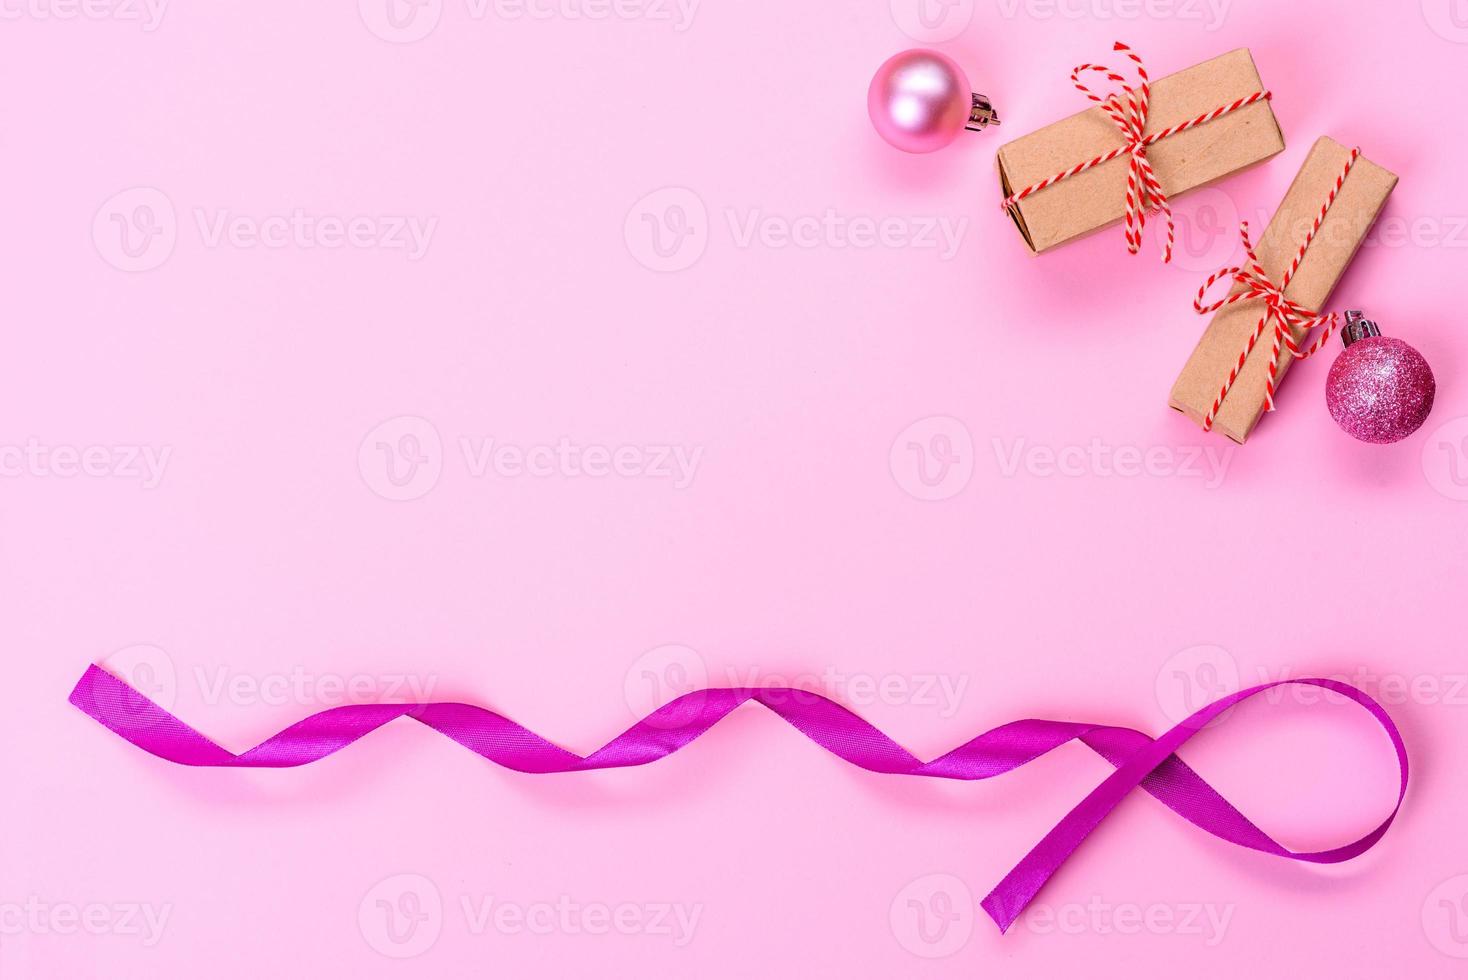 Weihnachten heller farbiger dekorativer Hintergrund foto